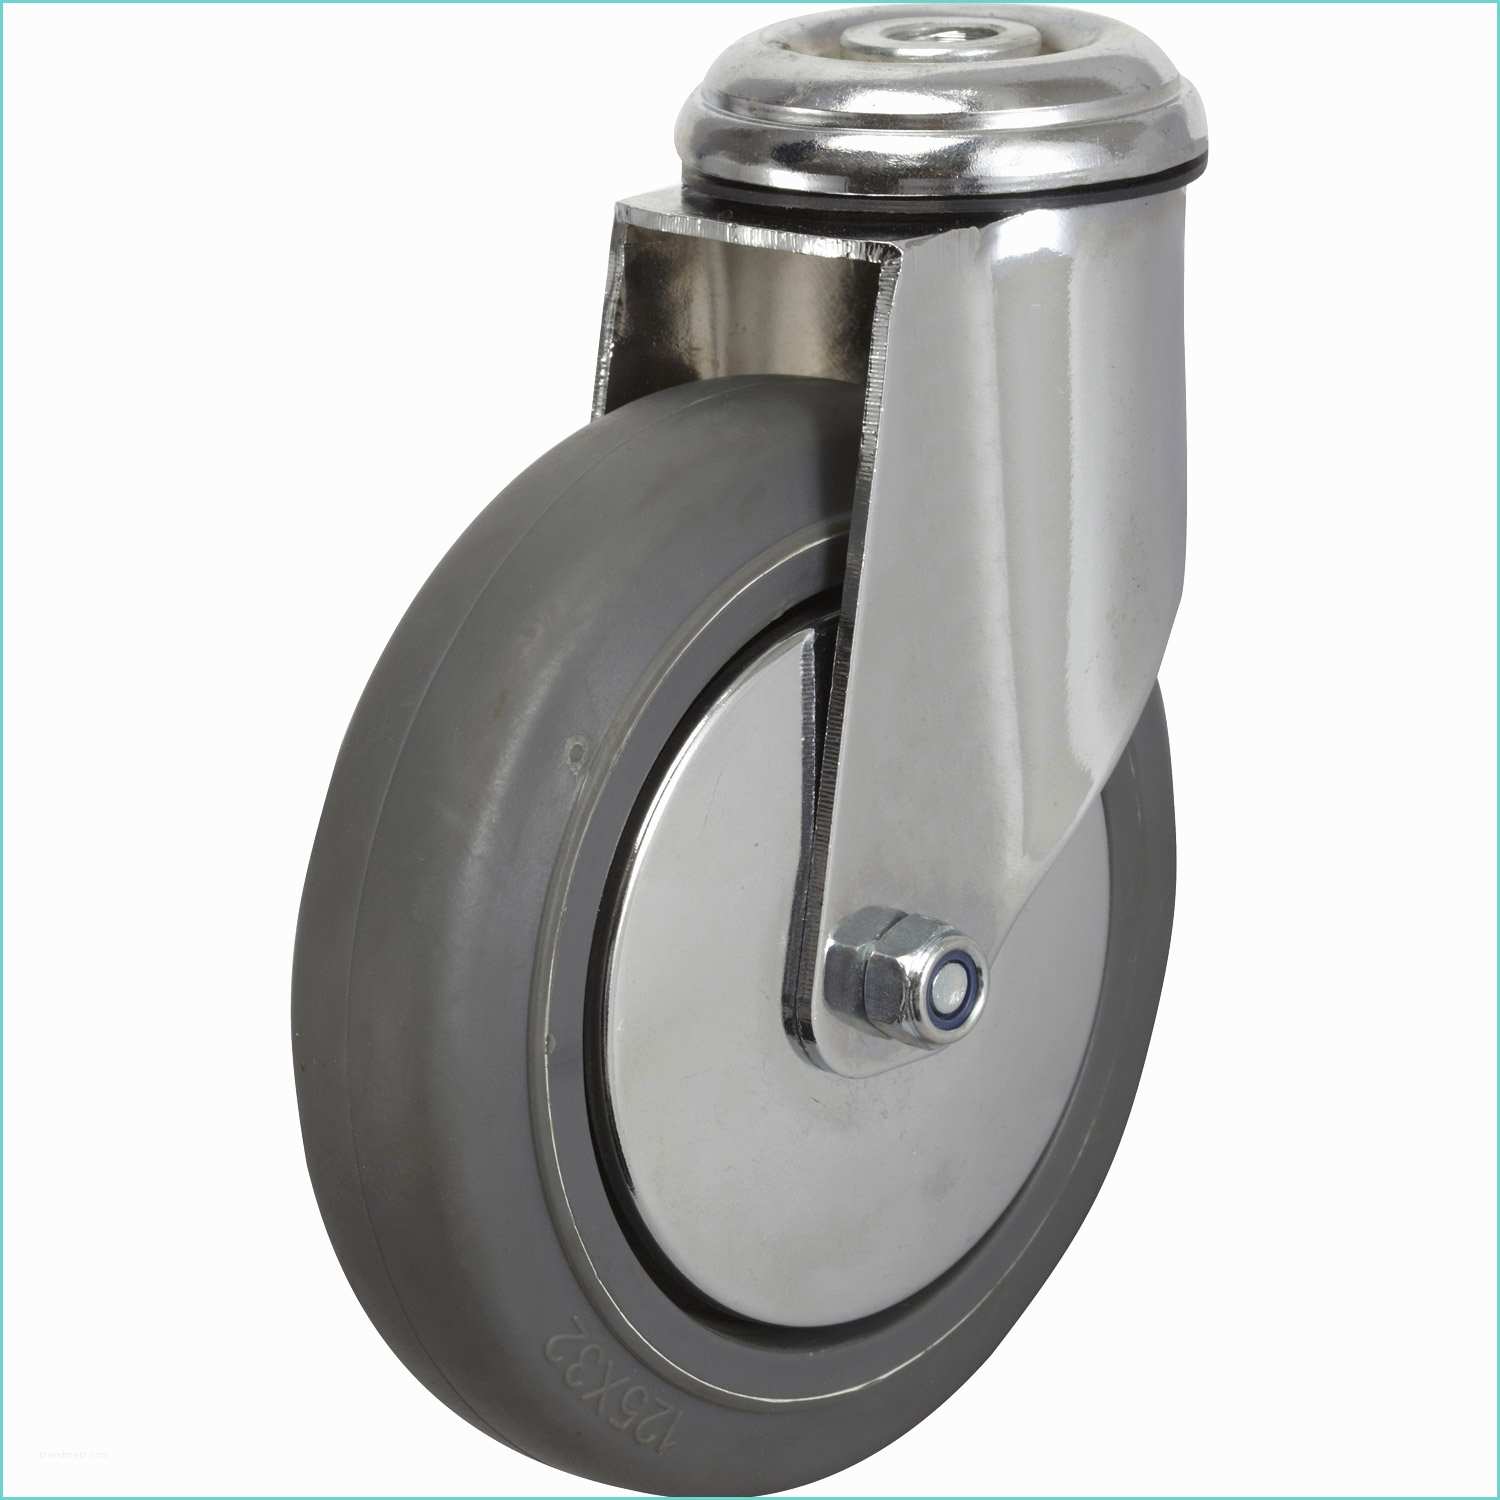 Roulette Industrielle Leroy Merlin Roulette Pivotante à Oeil Pour Collectivités Diamètre 125